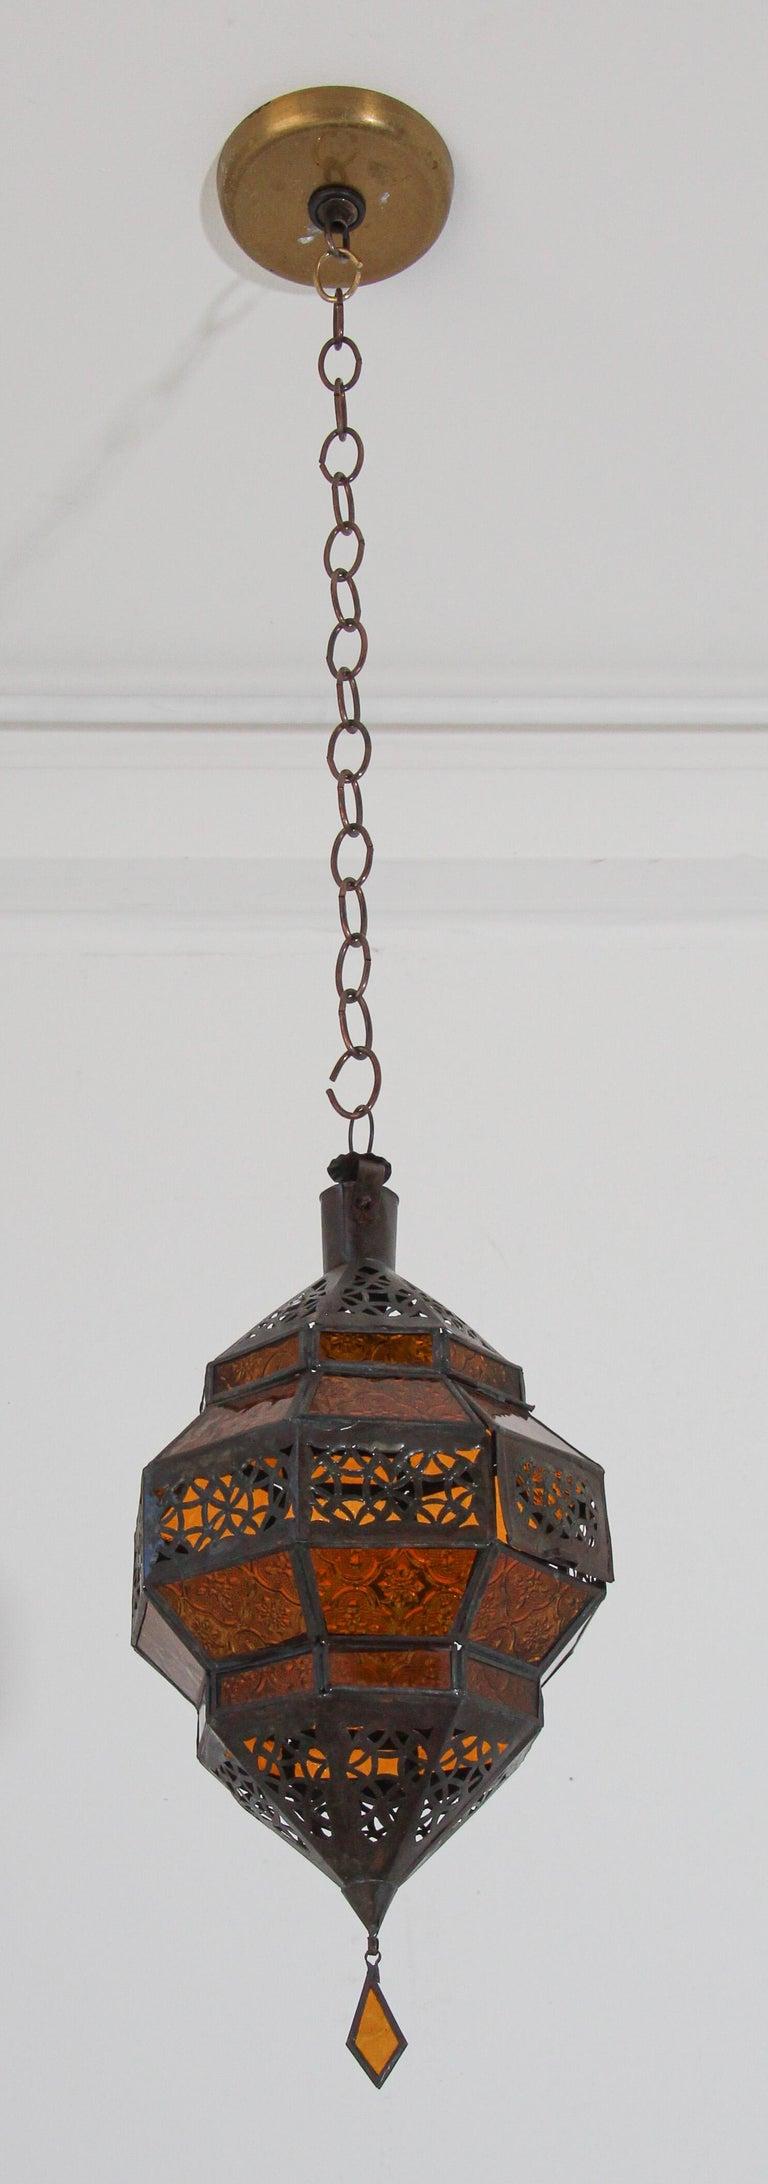 Lanterne marocaine en métal et verre ambré en forme de diamant.
Lanterne marocaine de forme octogonale en métal couleur rouille et verre ambré.
Le haut et le bas sont en métal ajouré, découpé à la main, avec un motif mauresque.
Cette lanterne